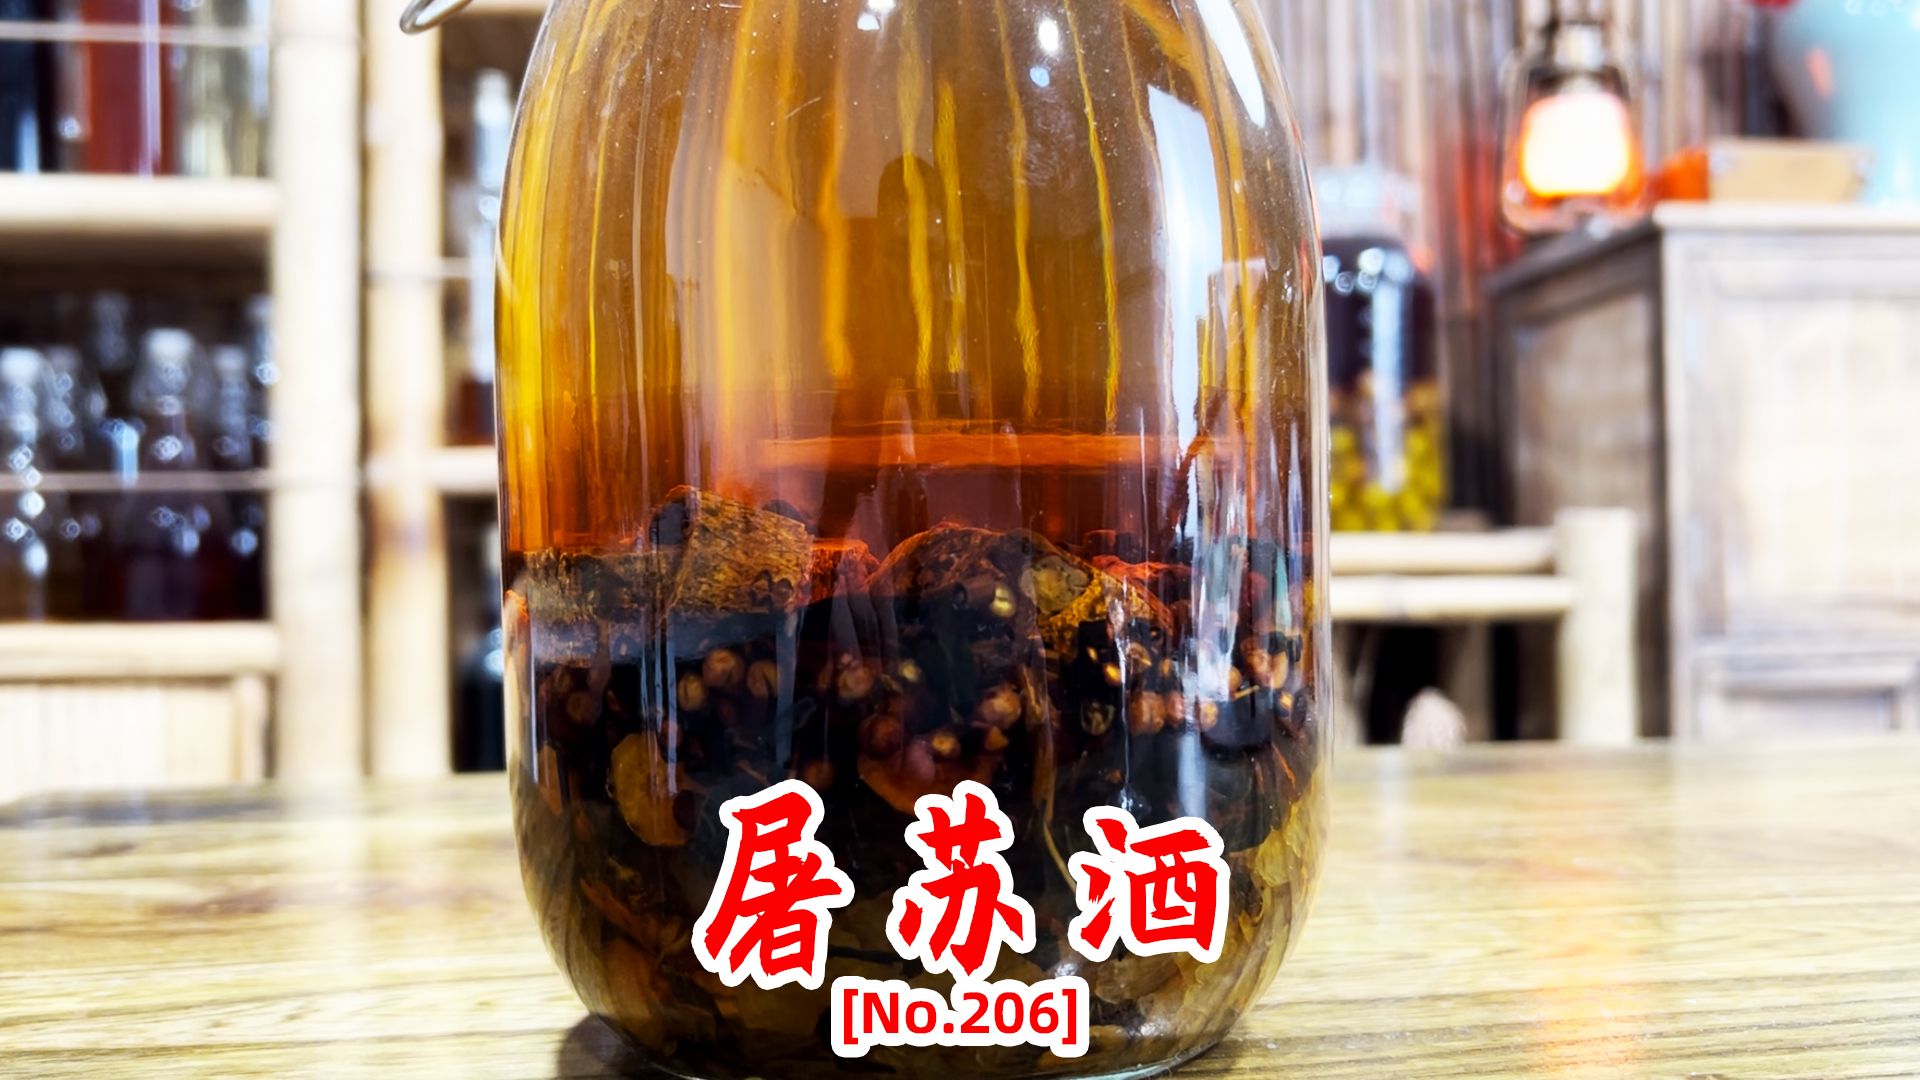 距今有近2000年历史，古代春节喝的屠苏酒是如何制作的？